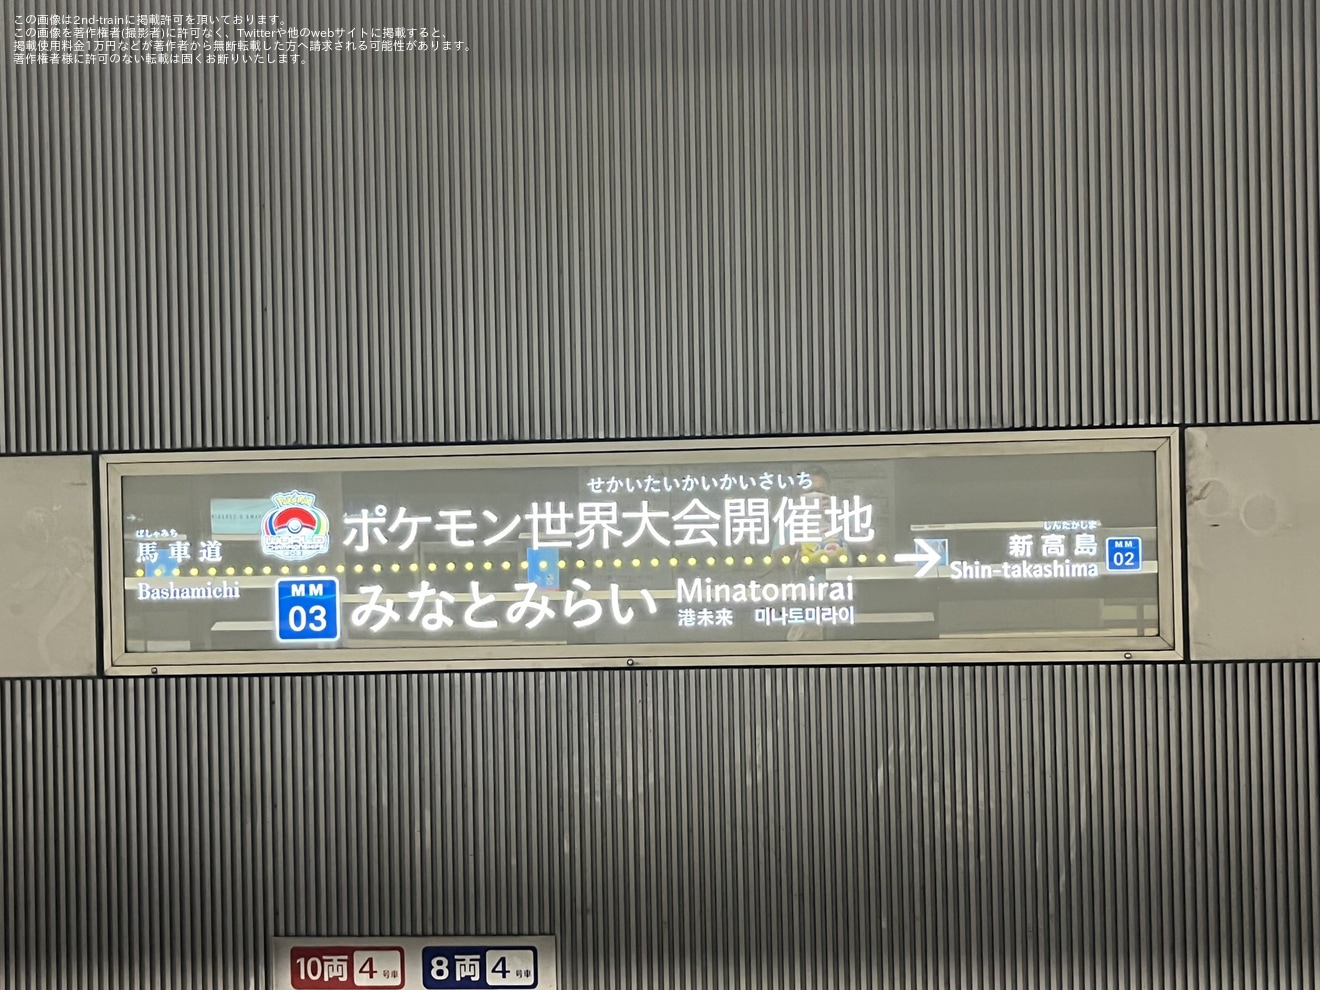 【横高】「ポケモンバトル世界大会開催記念」でみなとみらい駅を大会オフィシャルアートにて装飾の拡大写真